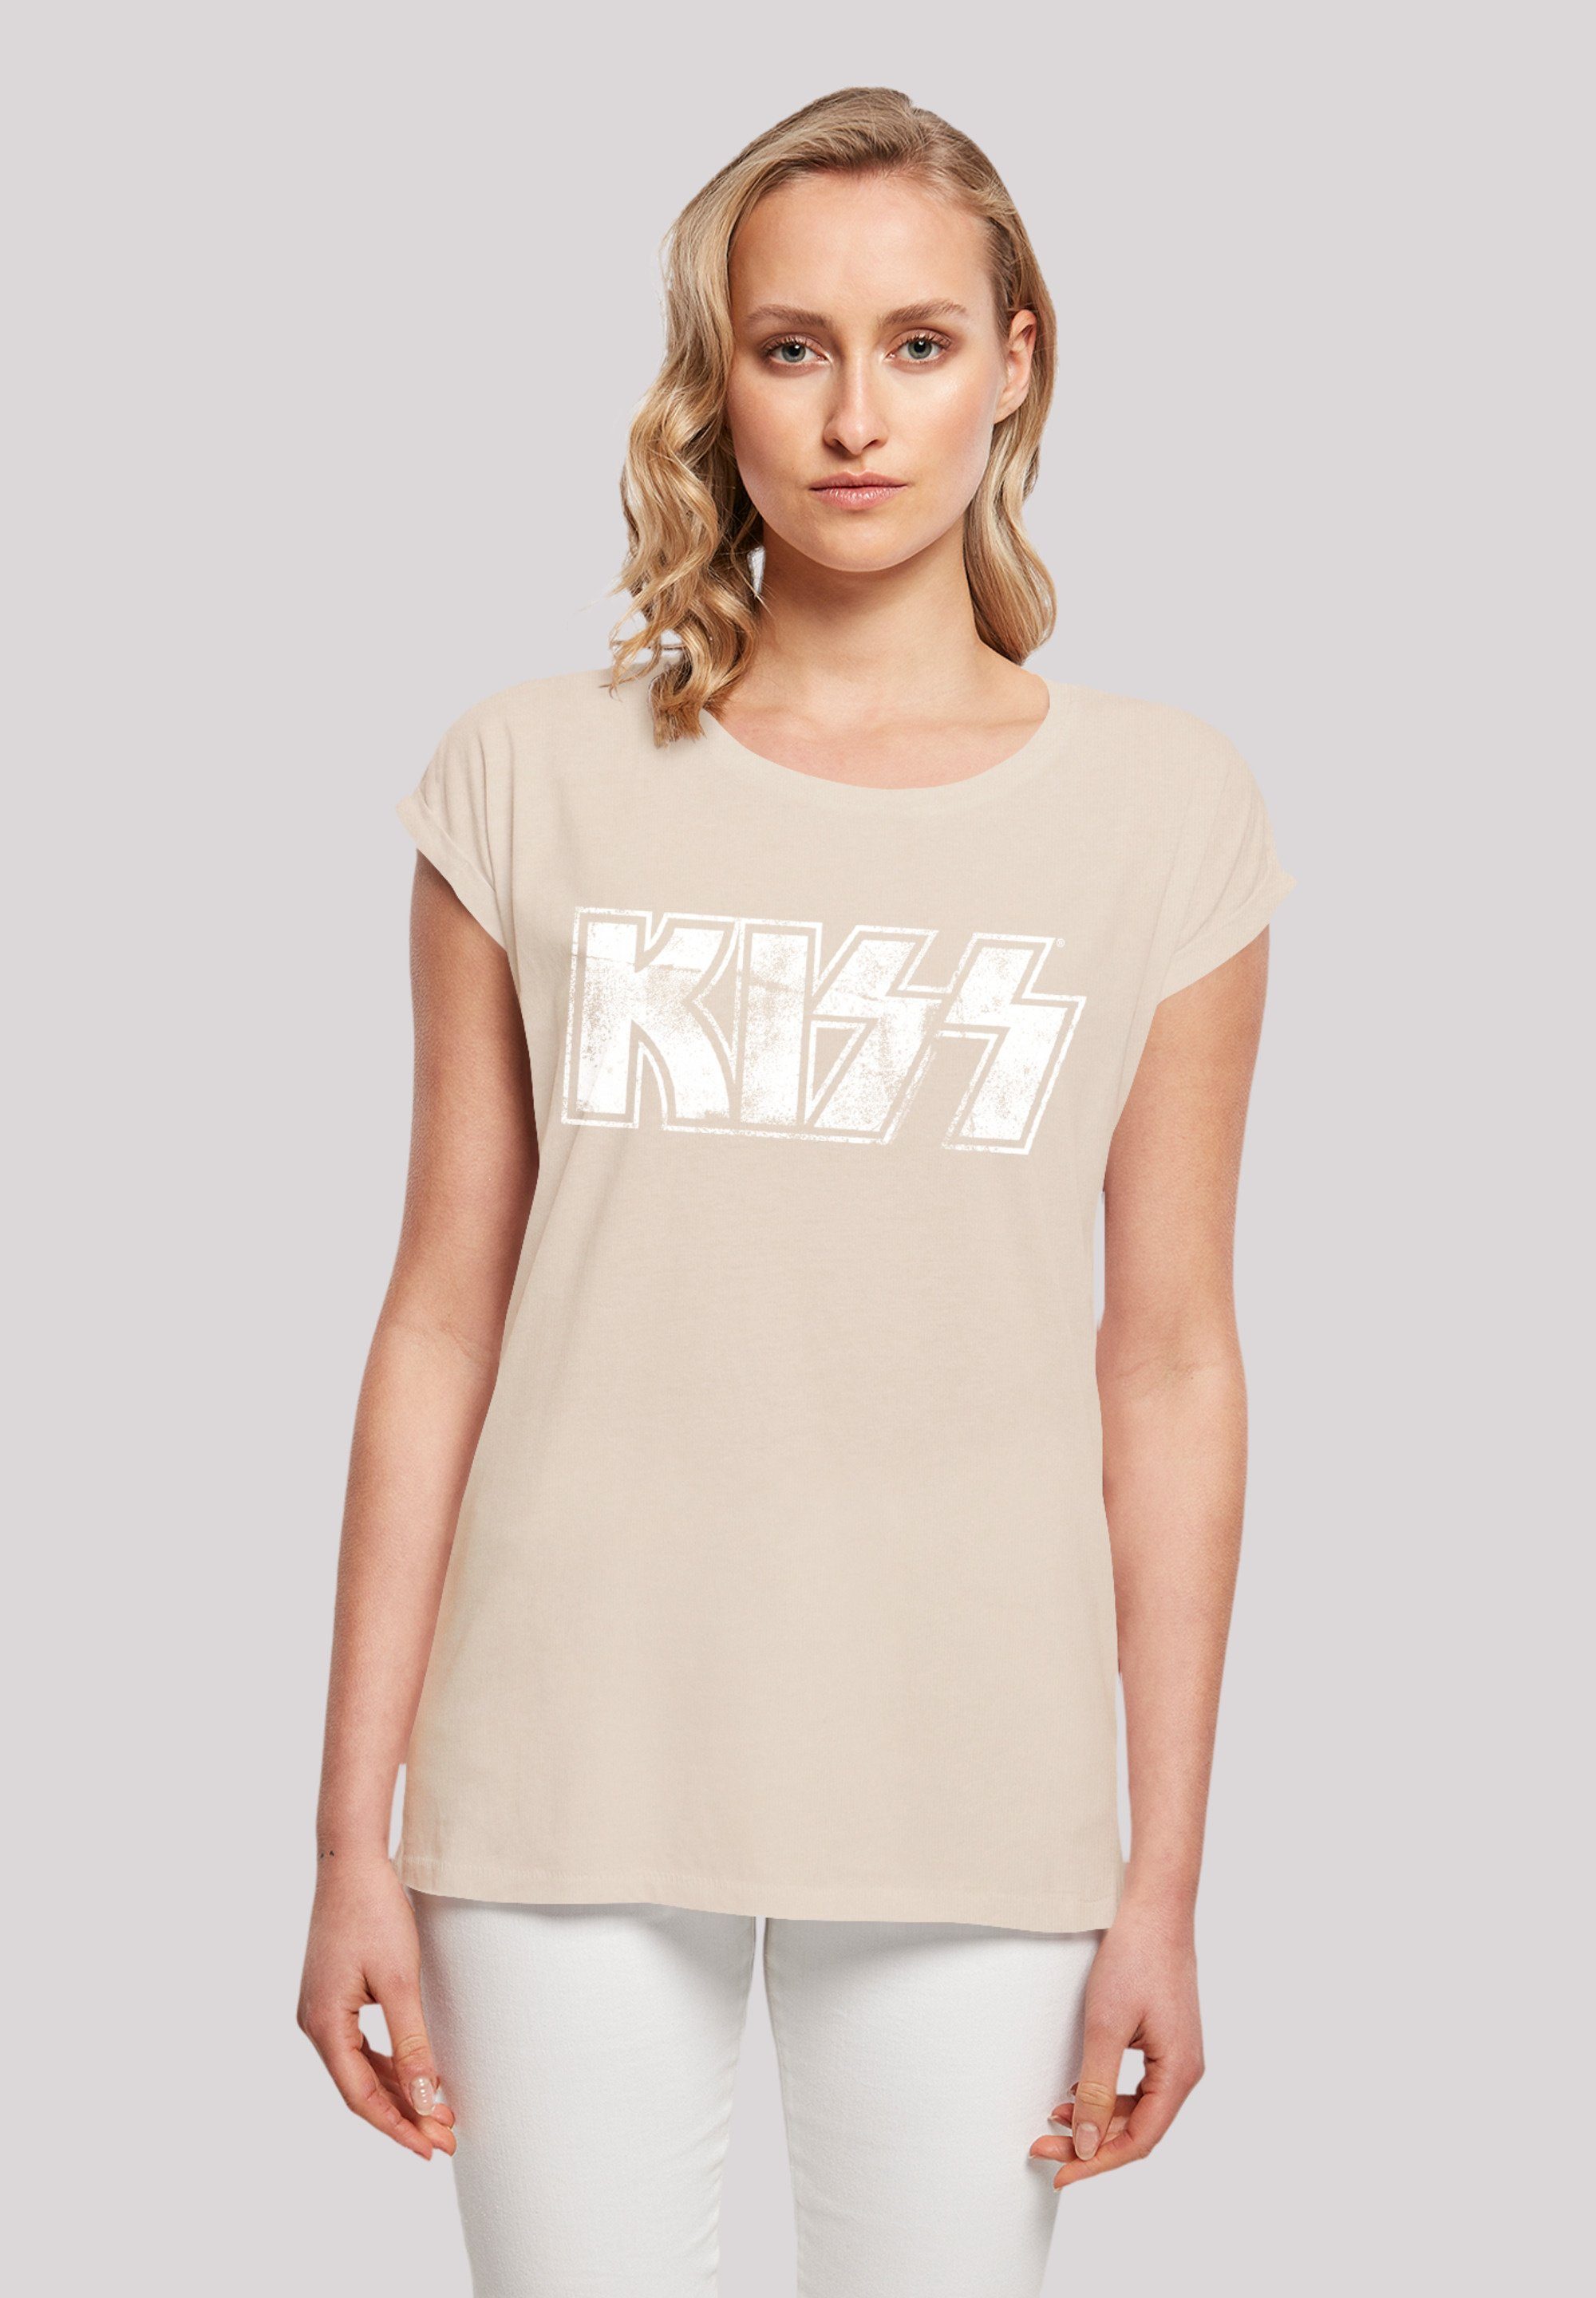 hohem Kiss T-Shirt mit Tragekomfort Sehr Vintage Logo Rock Off, Musik, weicher Baumwollstoff F4NT4STIC Premium Rock By Band Qualität,